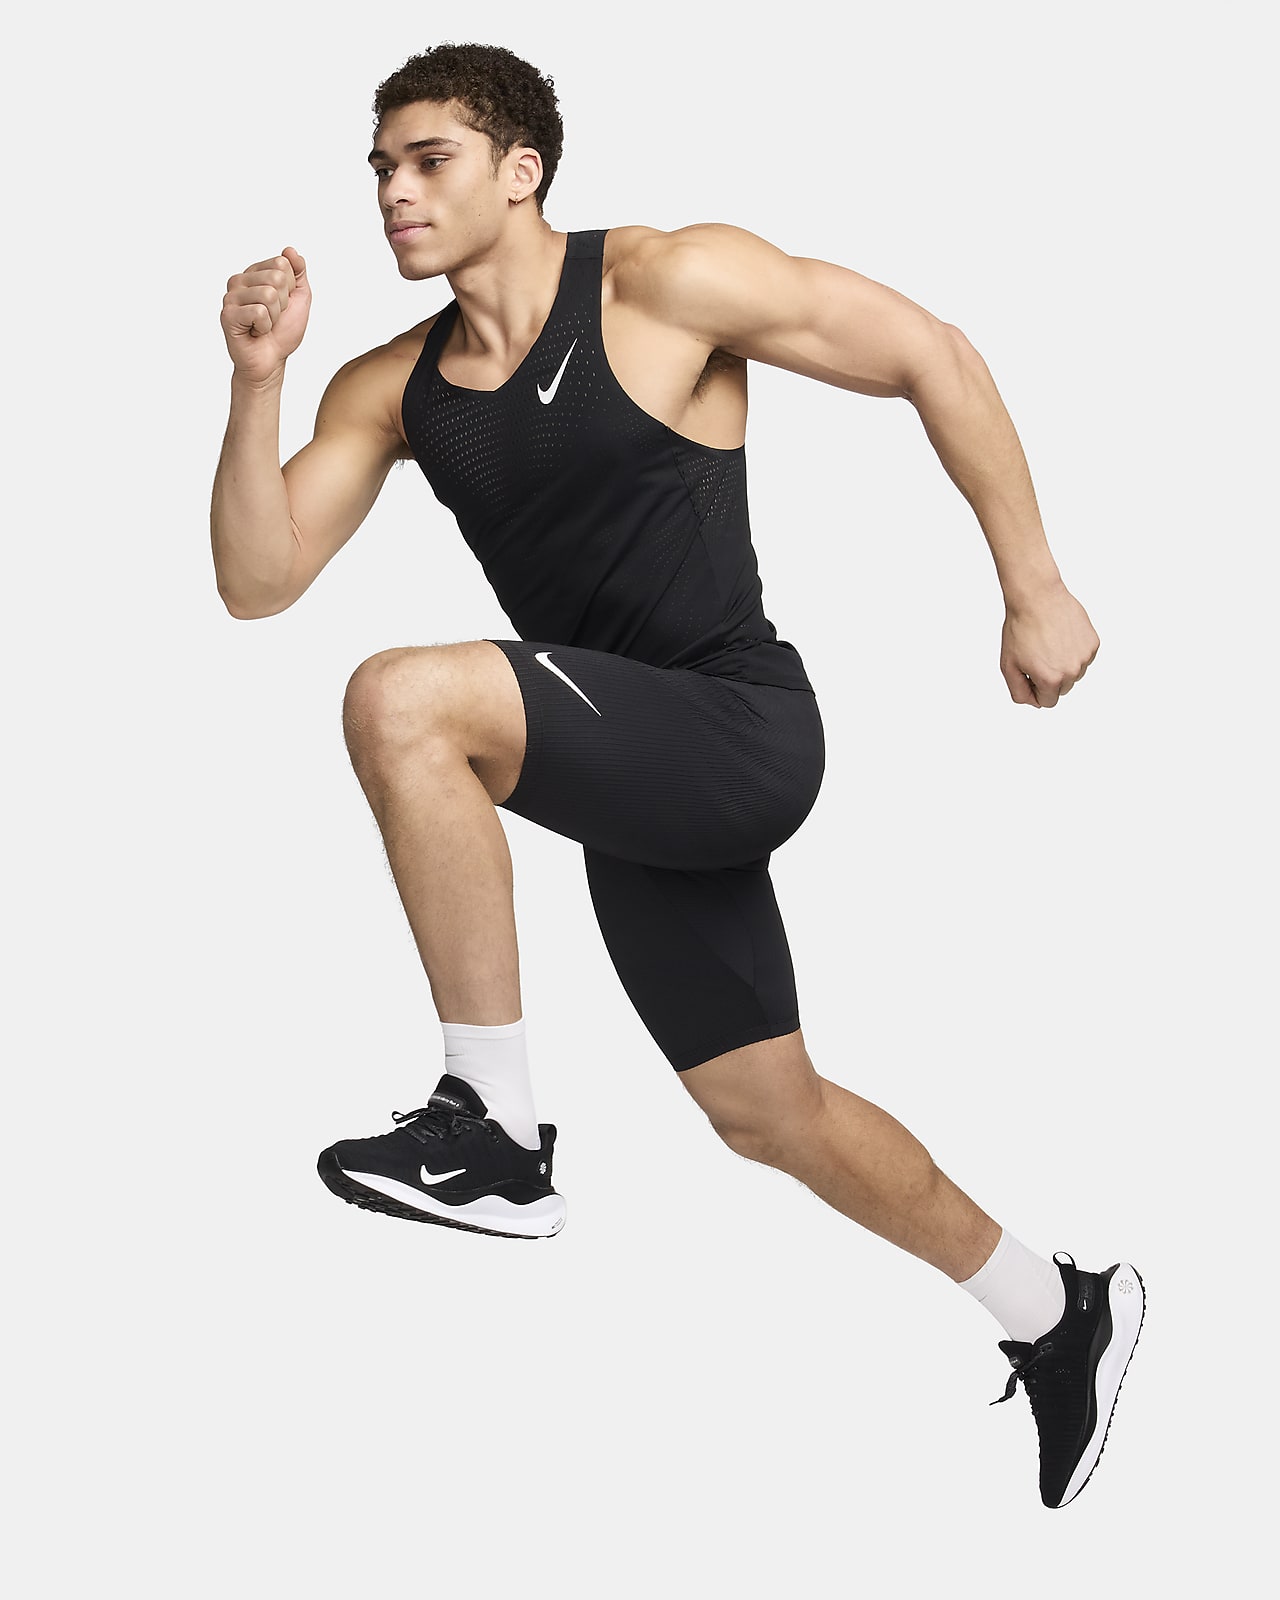 Mallas running Nike hombre